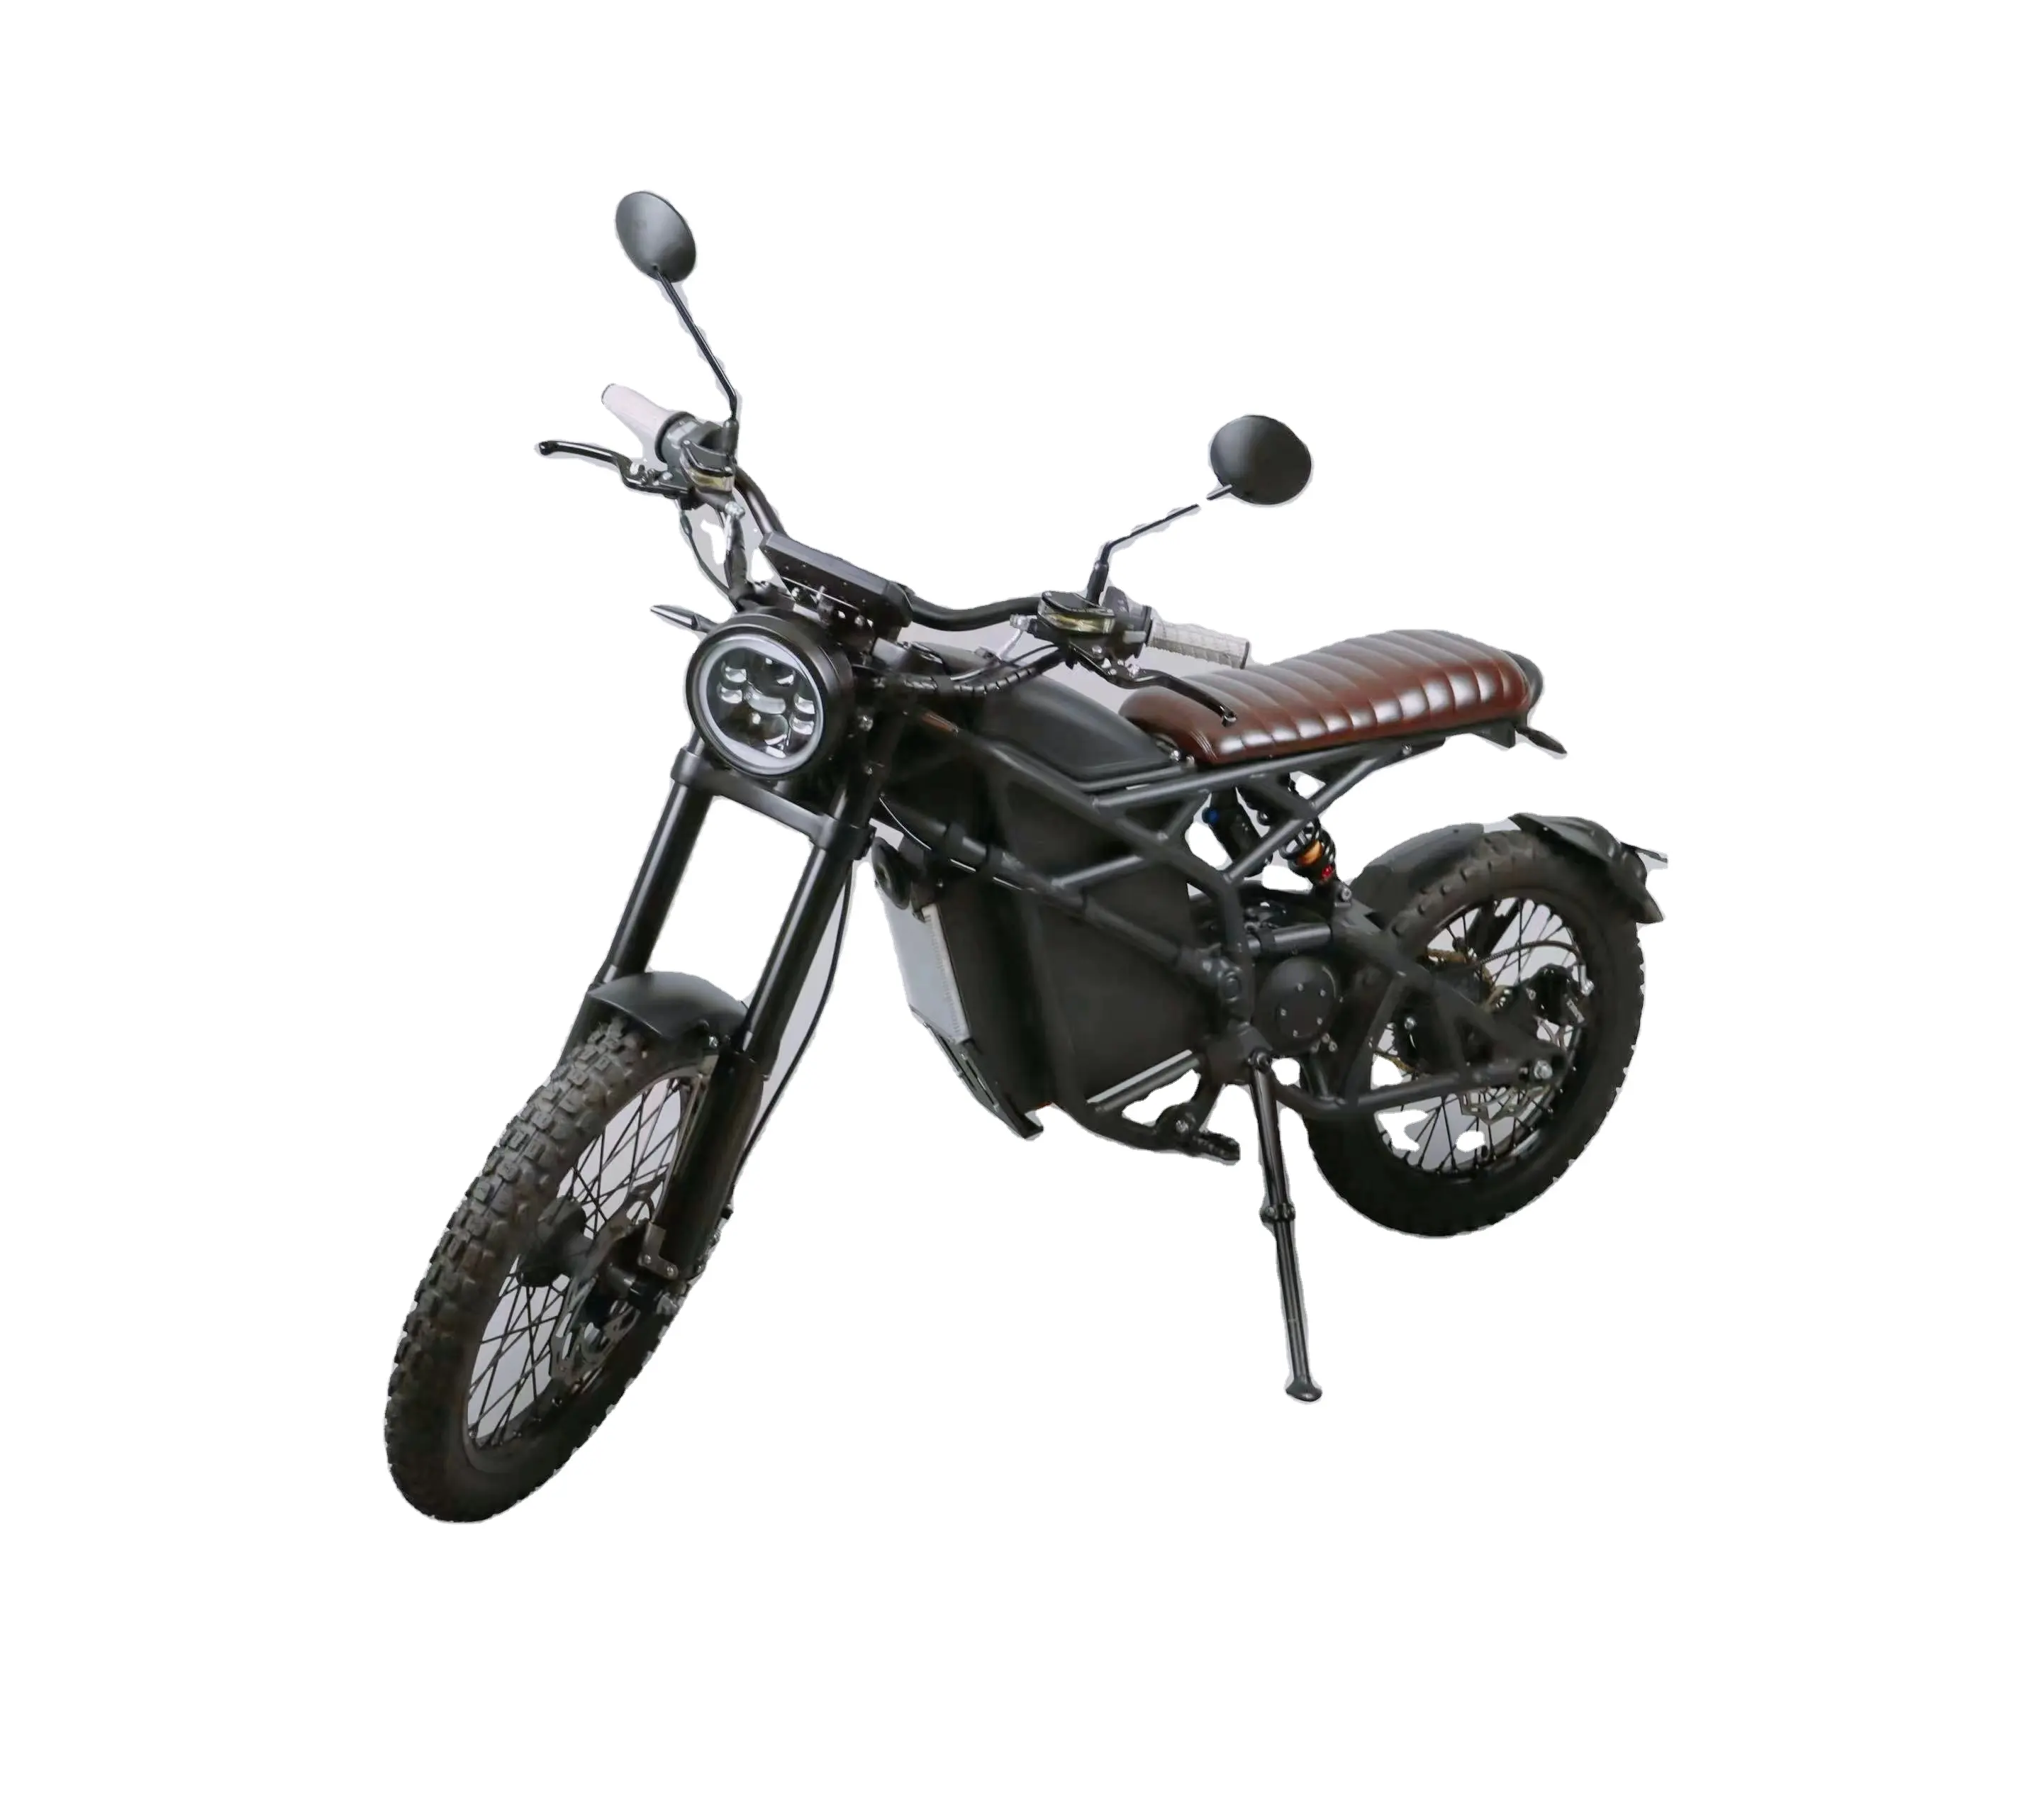 Vintage 9000w mid mounted motor High Power Electr Motorcycles Electric Motorbike Racing Bike Adult